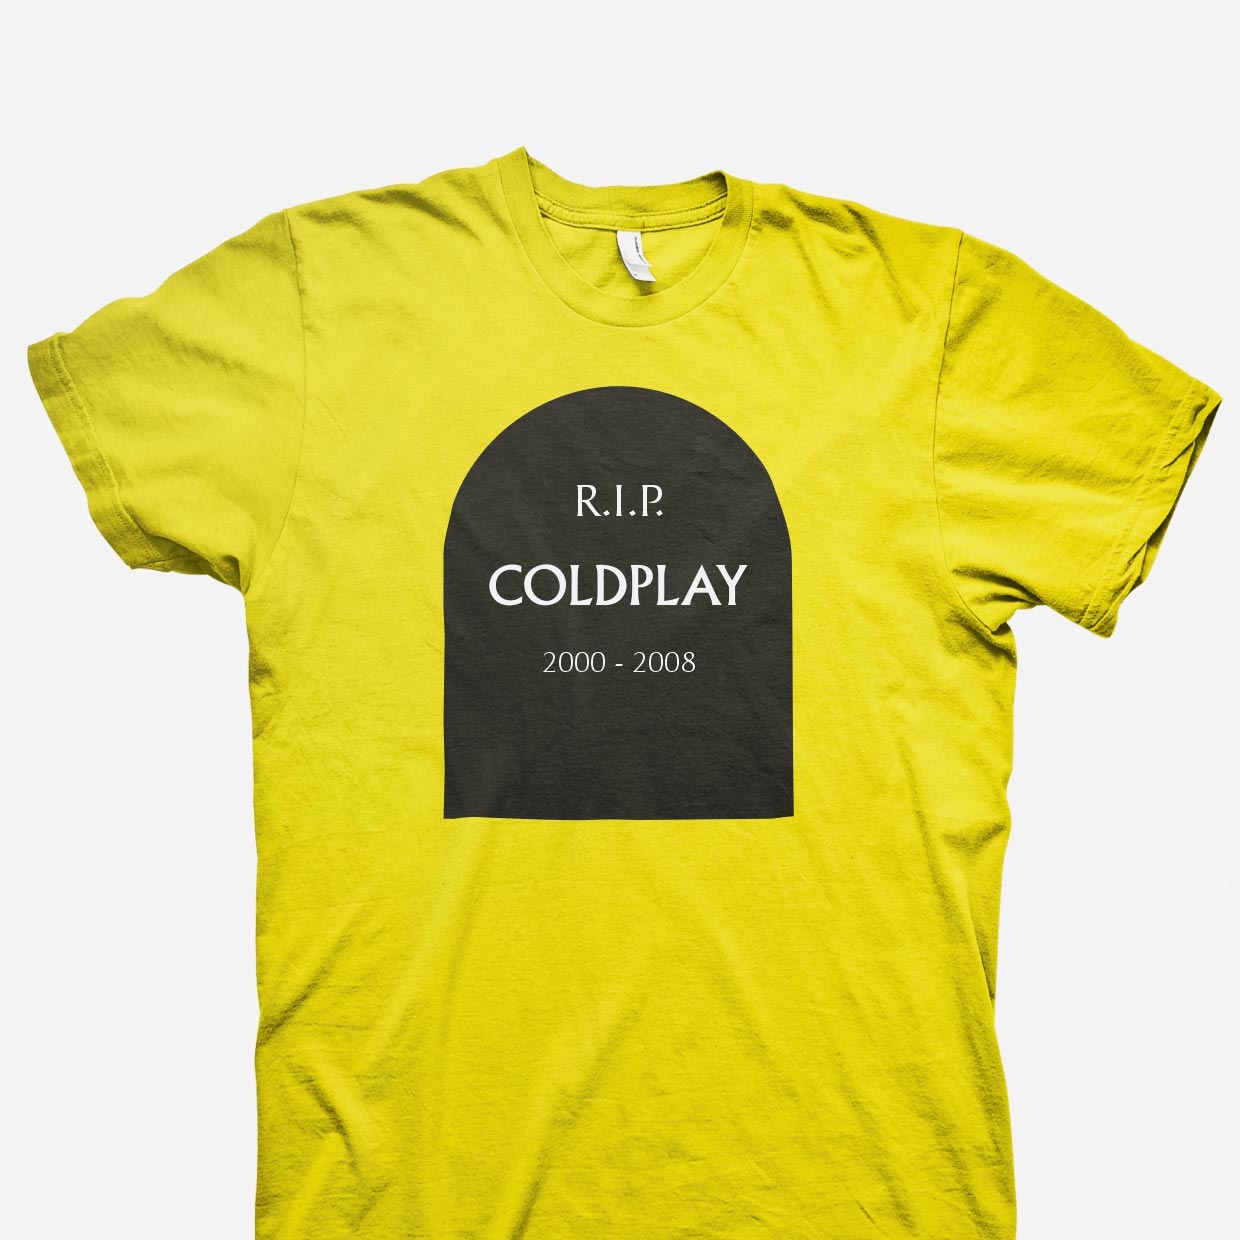 coldplay camiseta - javier real